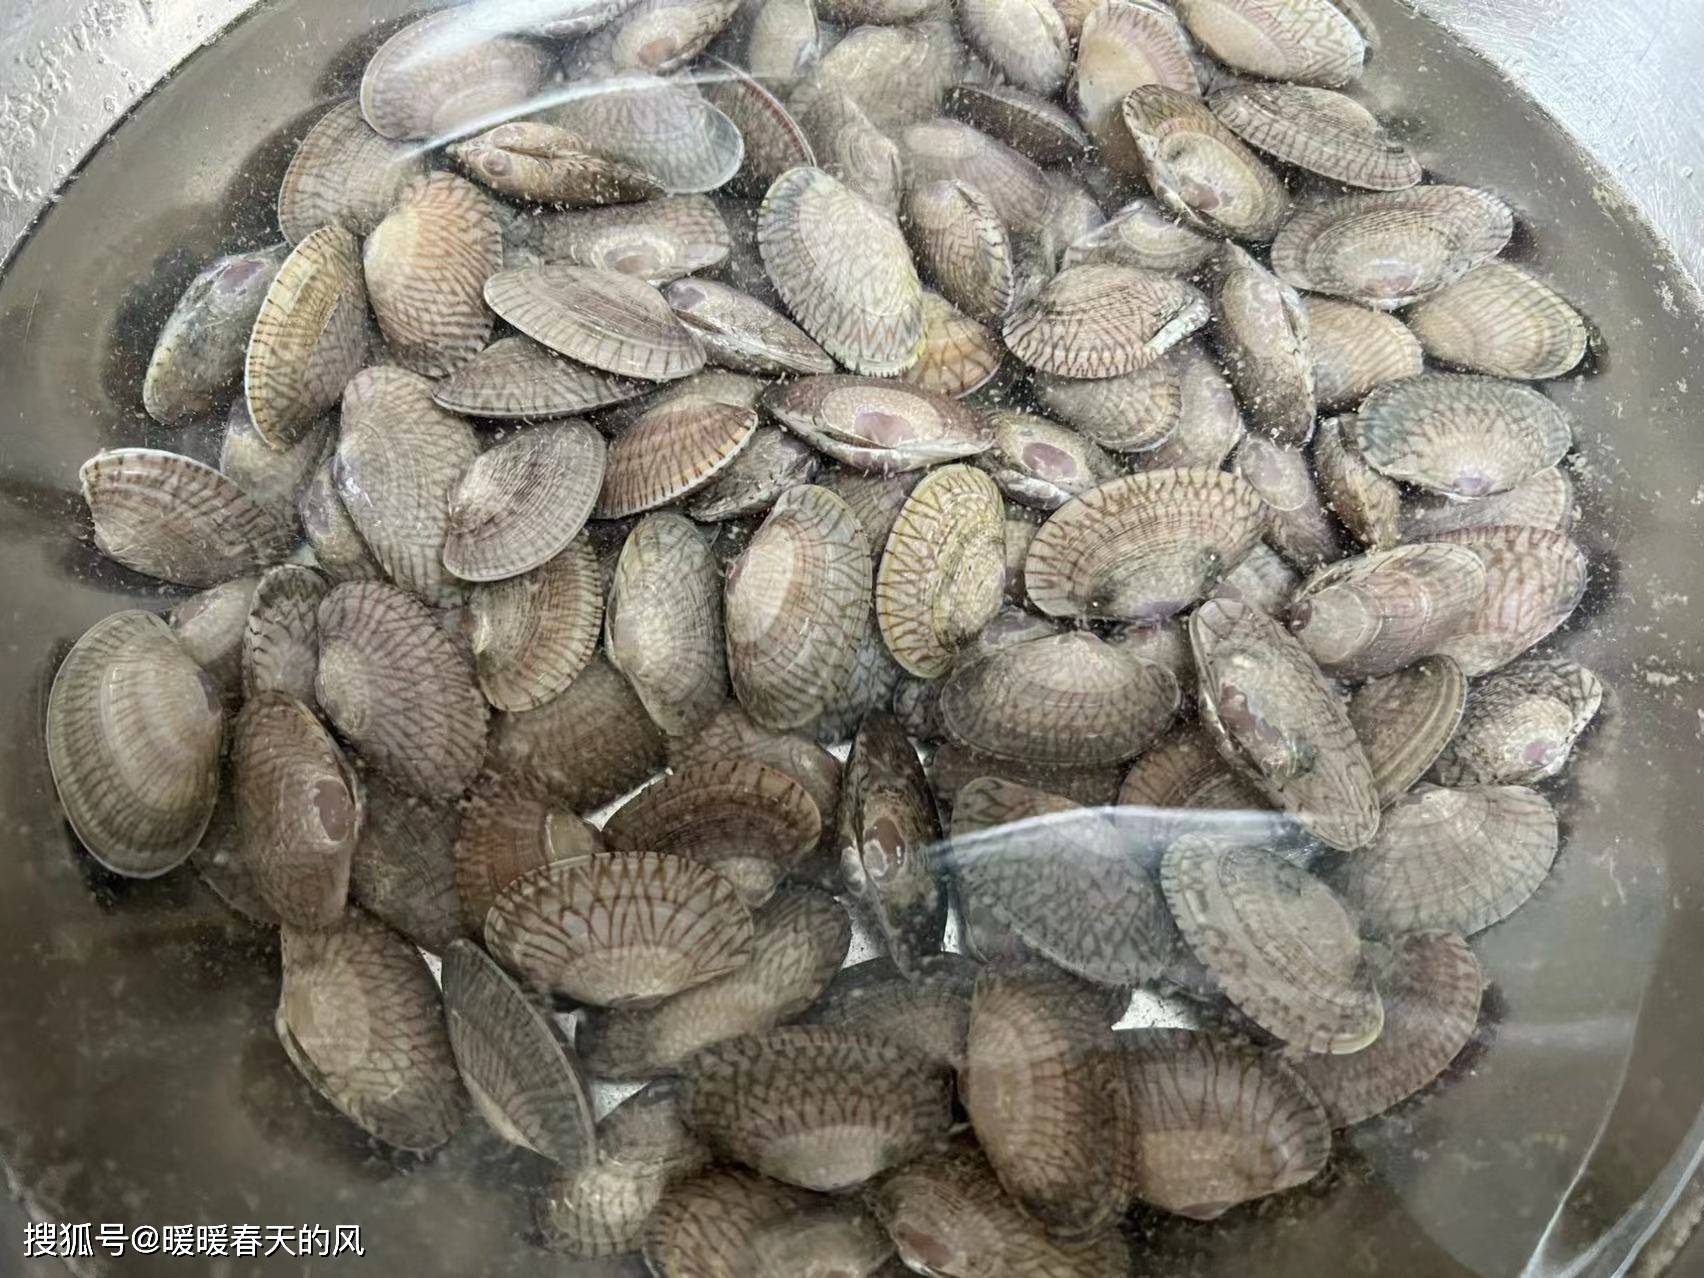 姜葱炒油蛤怎么做_姜葱炒油蛤的做法_张小厨厨房_豆果美食